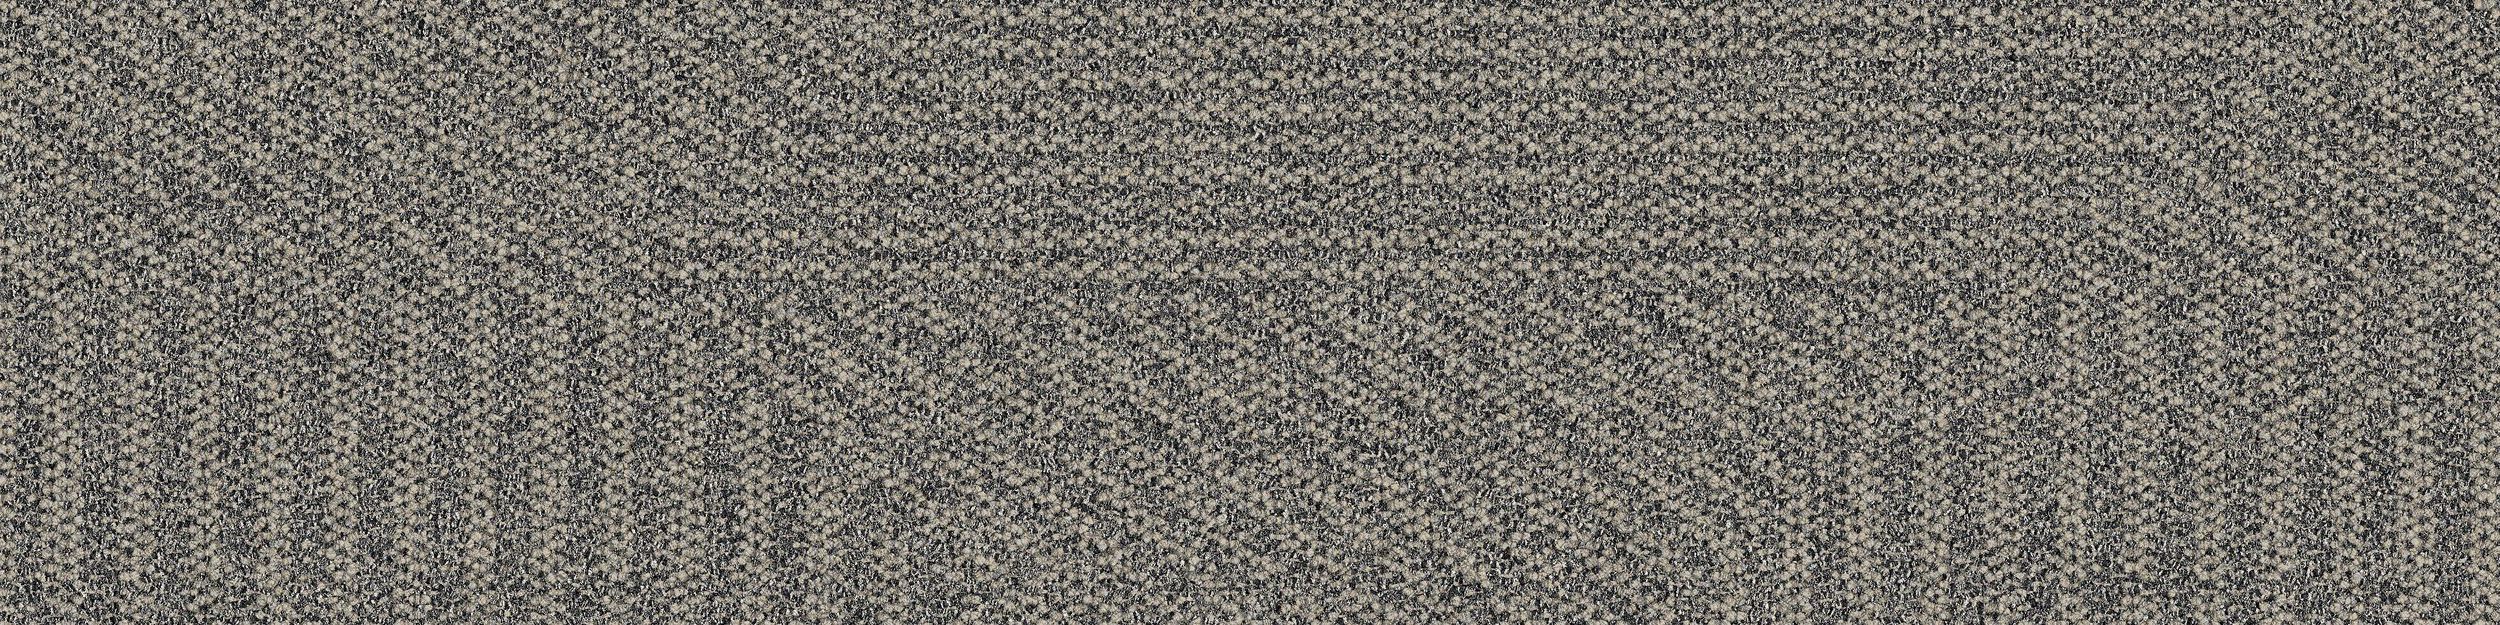 Open Air 407 Carpet Tile In Natural numéro d’image 2